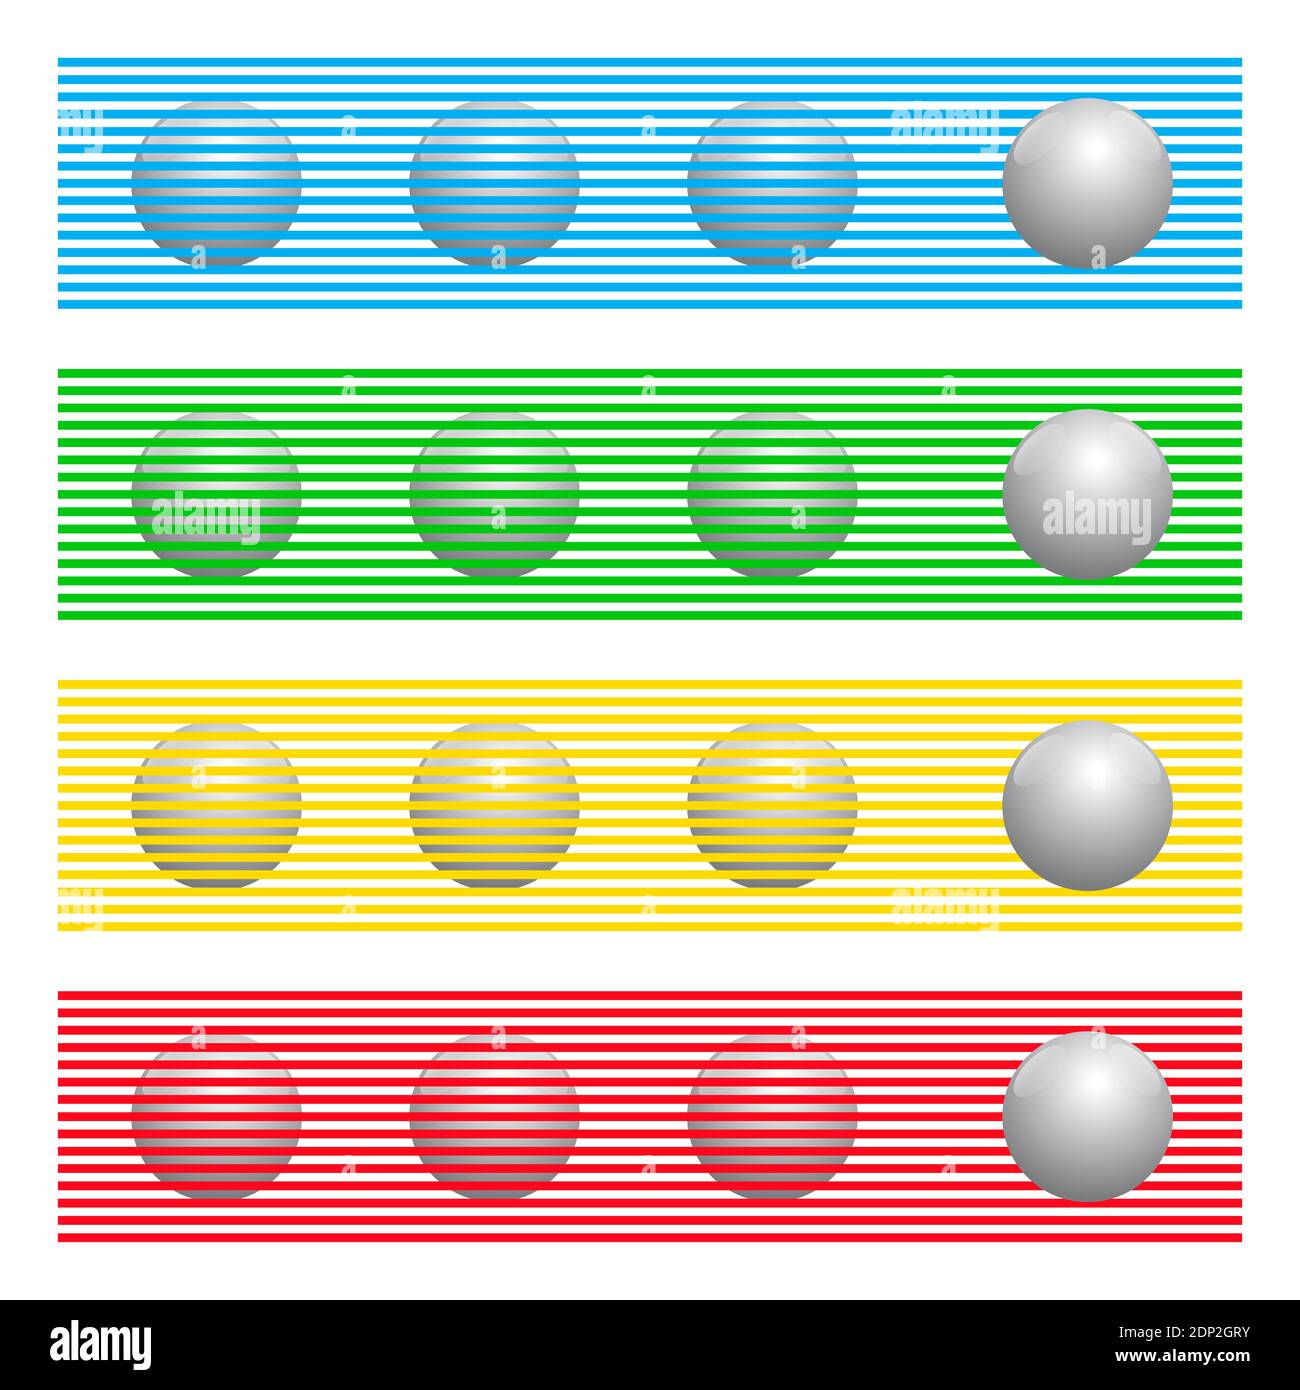 Kugeln mit gleichen Farben hinter farbigen Linien scheinen Kugeln verschiedener Farben zu sein, bekannt als Munker-Weiße Illusion. Stockfoto